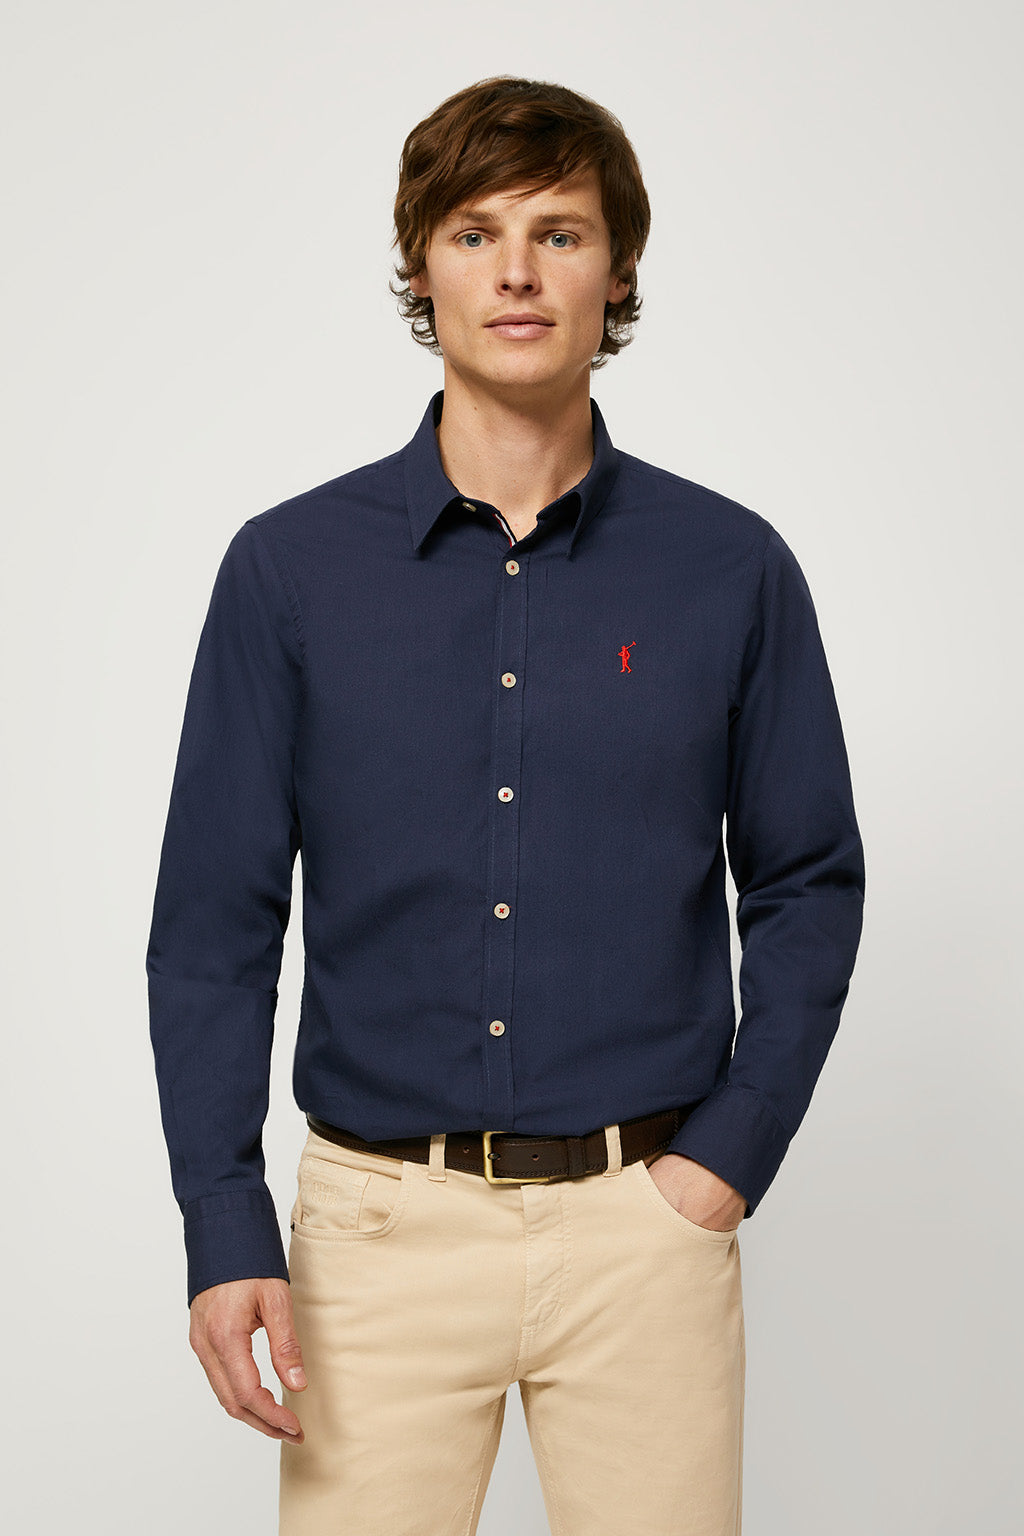 Camisa azul marino con logo bordado – Polo Club